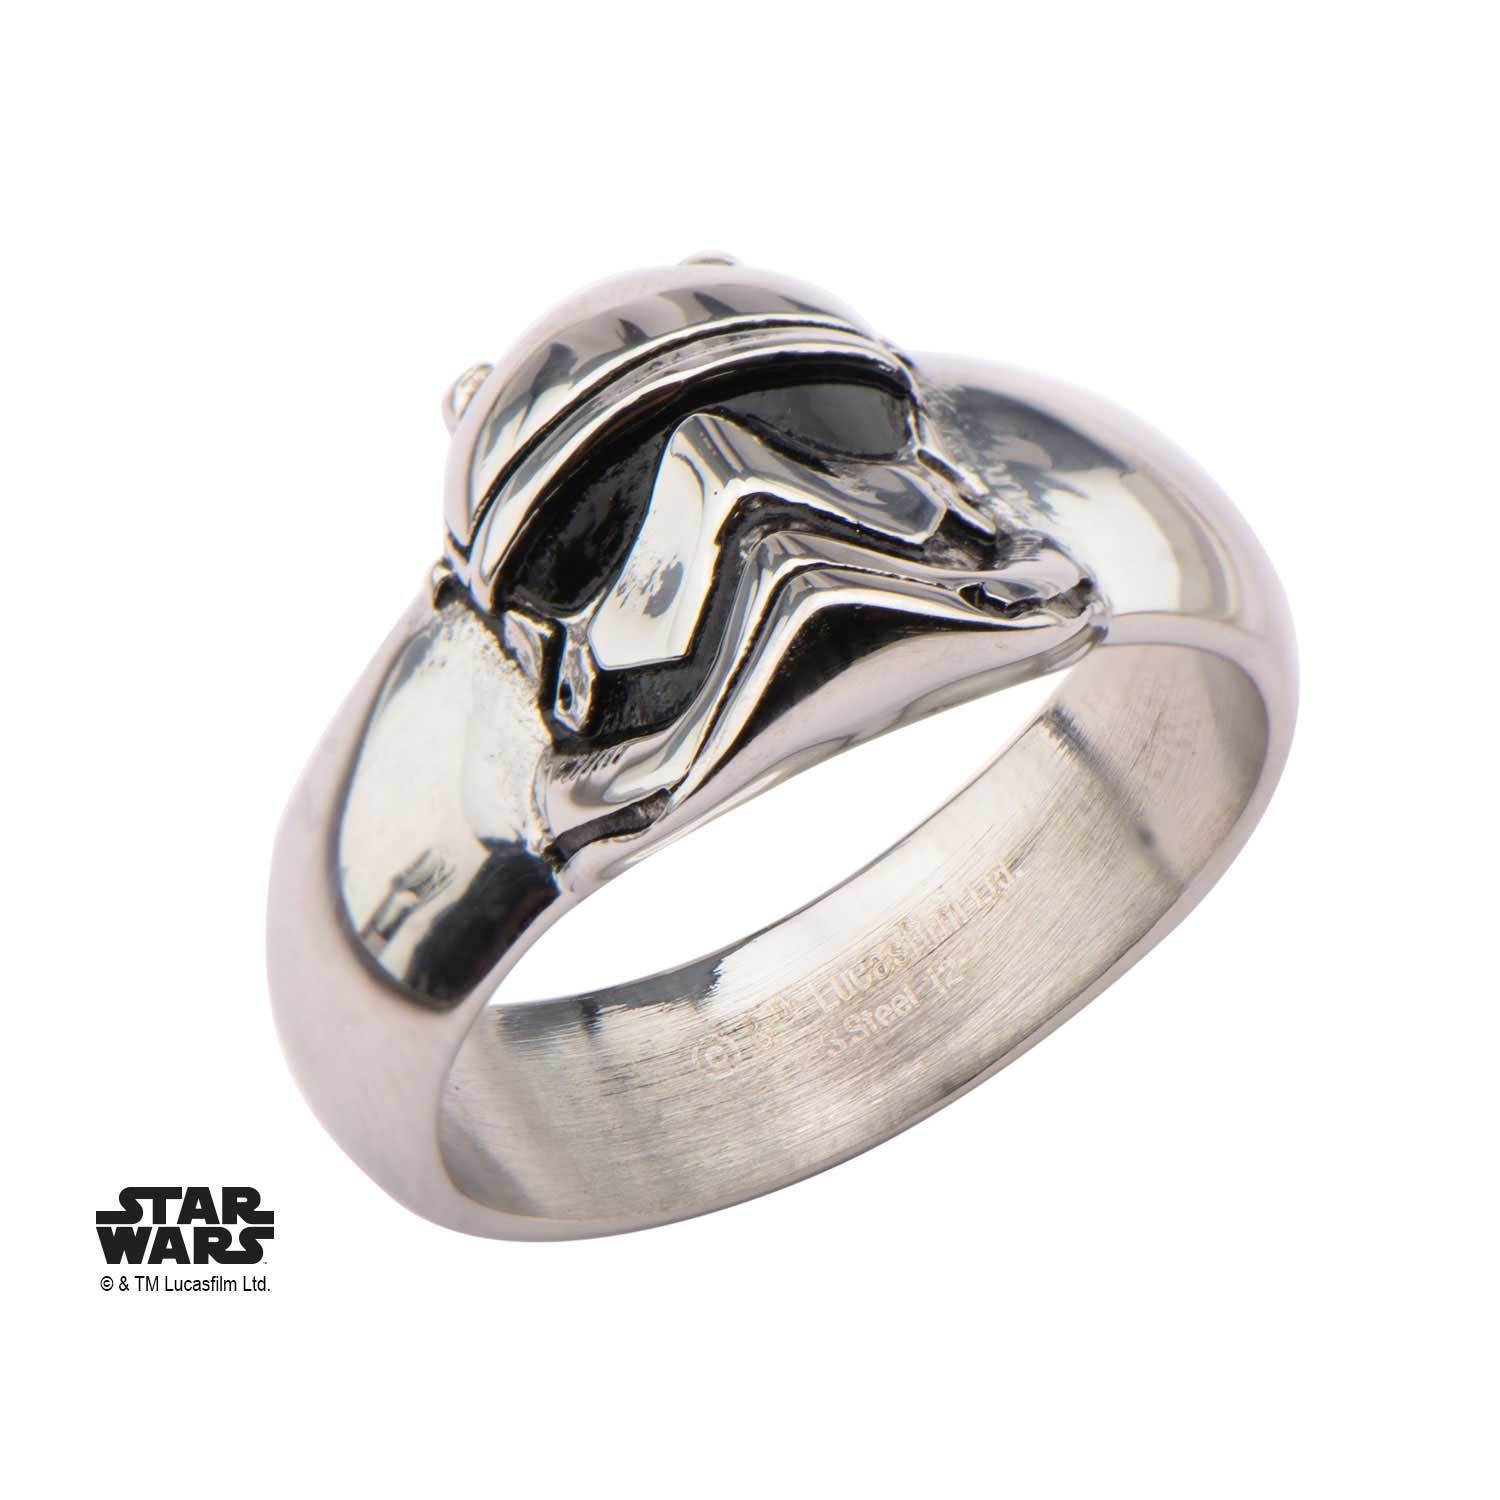 Star Wars Episode 7 3D Stormtrooper Ring